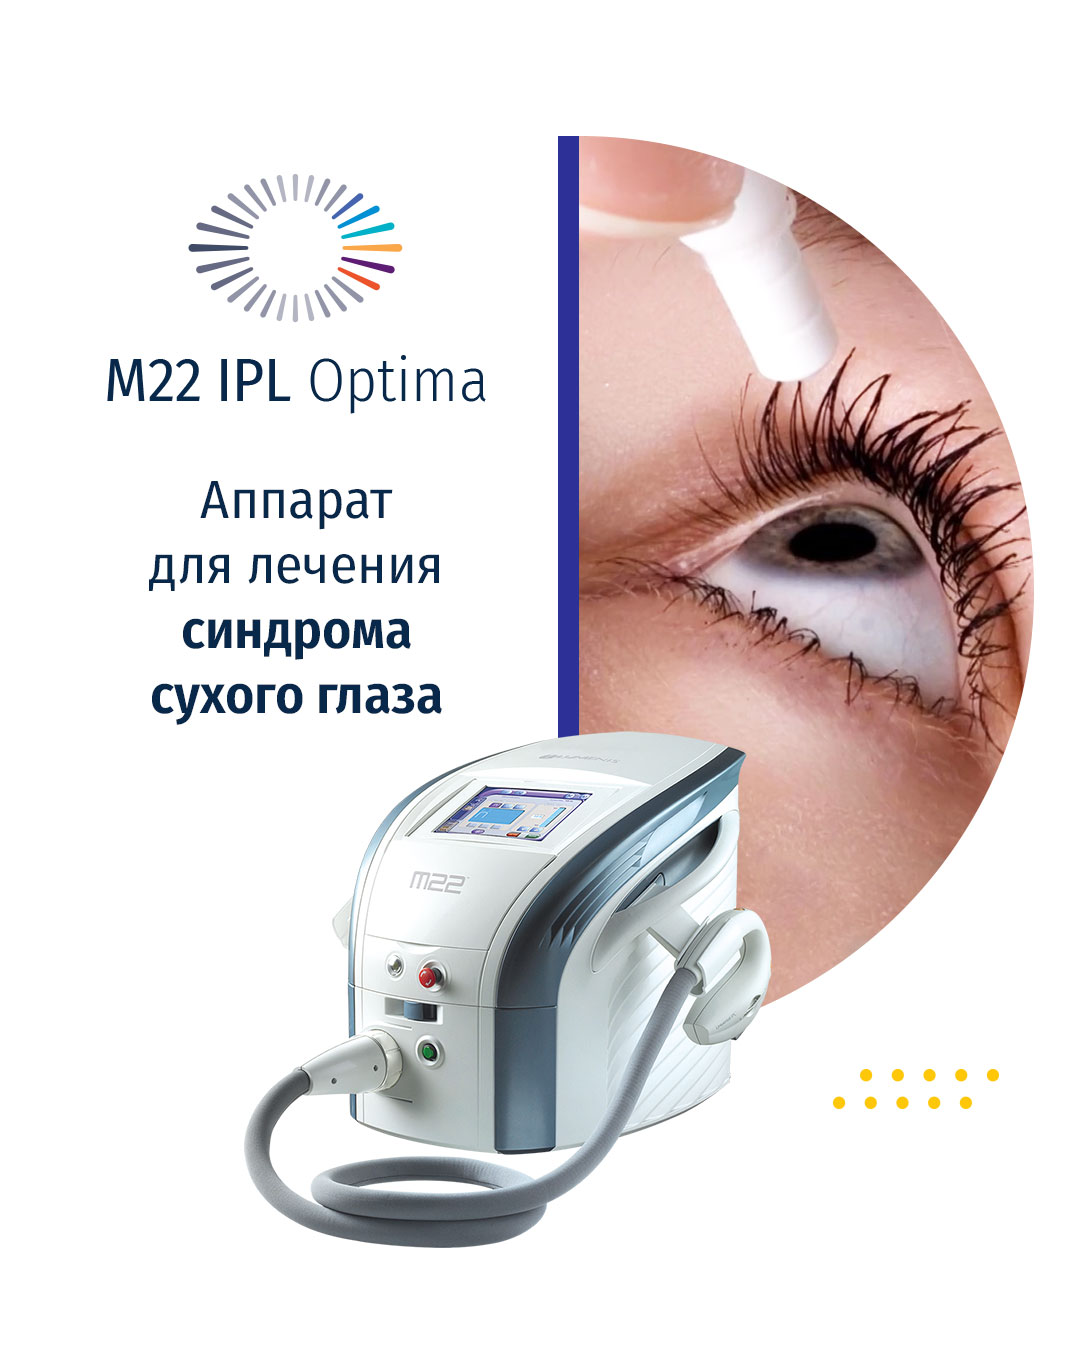 Новое в лечении синдрома сухого глаза